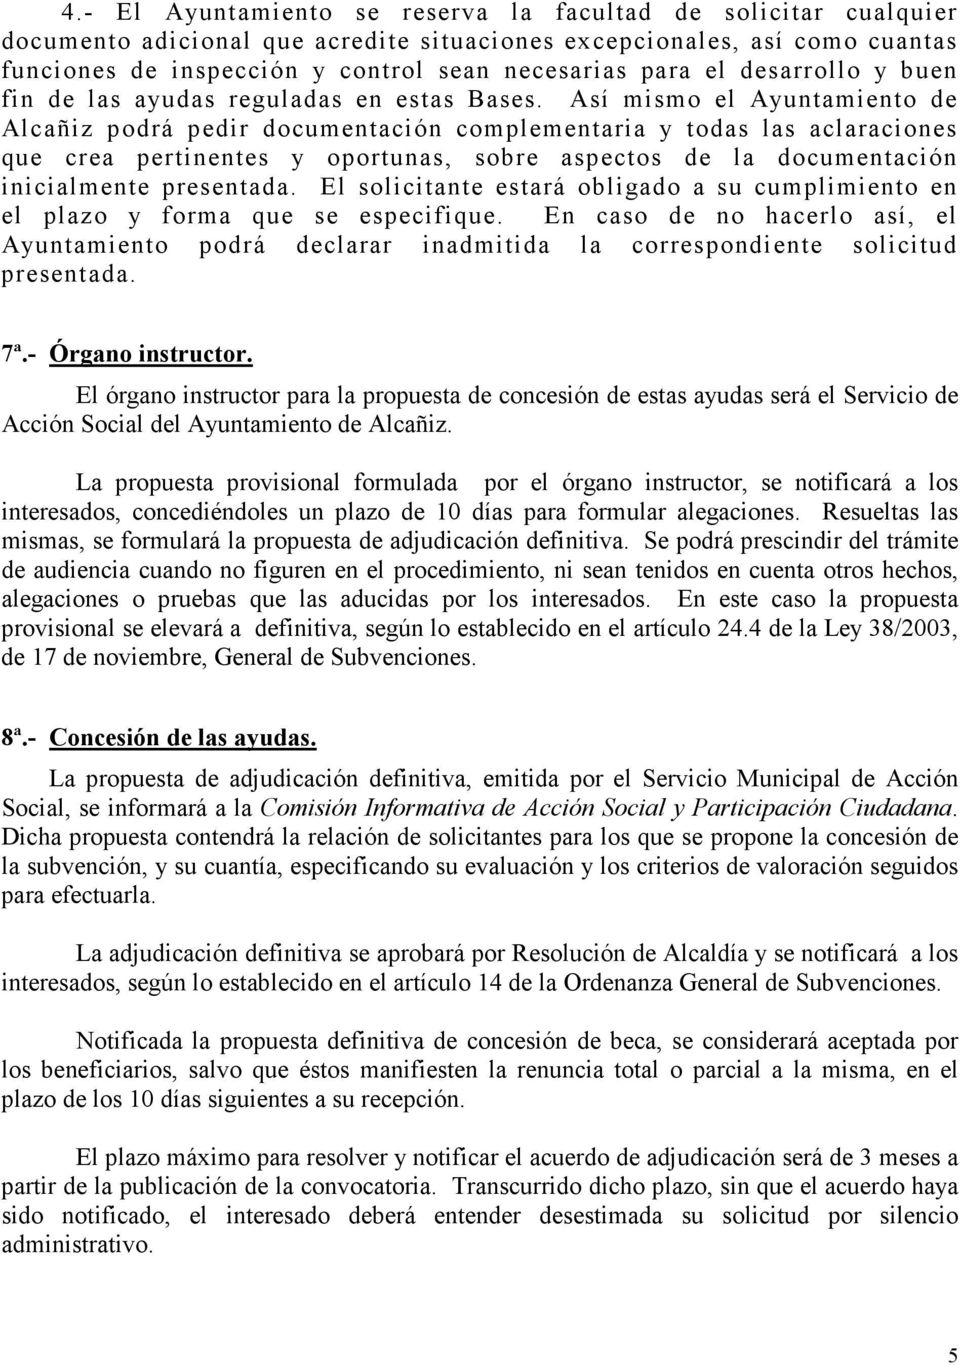 Así mismo el Ayuntamiento de Alcañiz podrá pedir documentación complementaria y todas las aclaraciones que crea pertinentes y oportunas, sobre aspectos de la documentación inicialmente presentada.